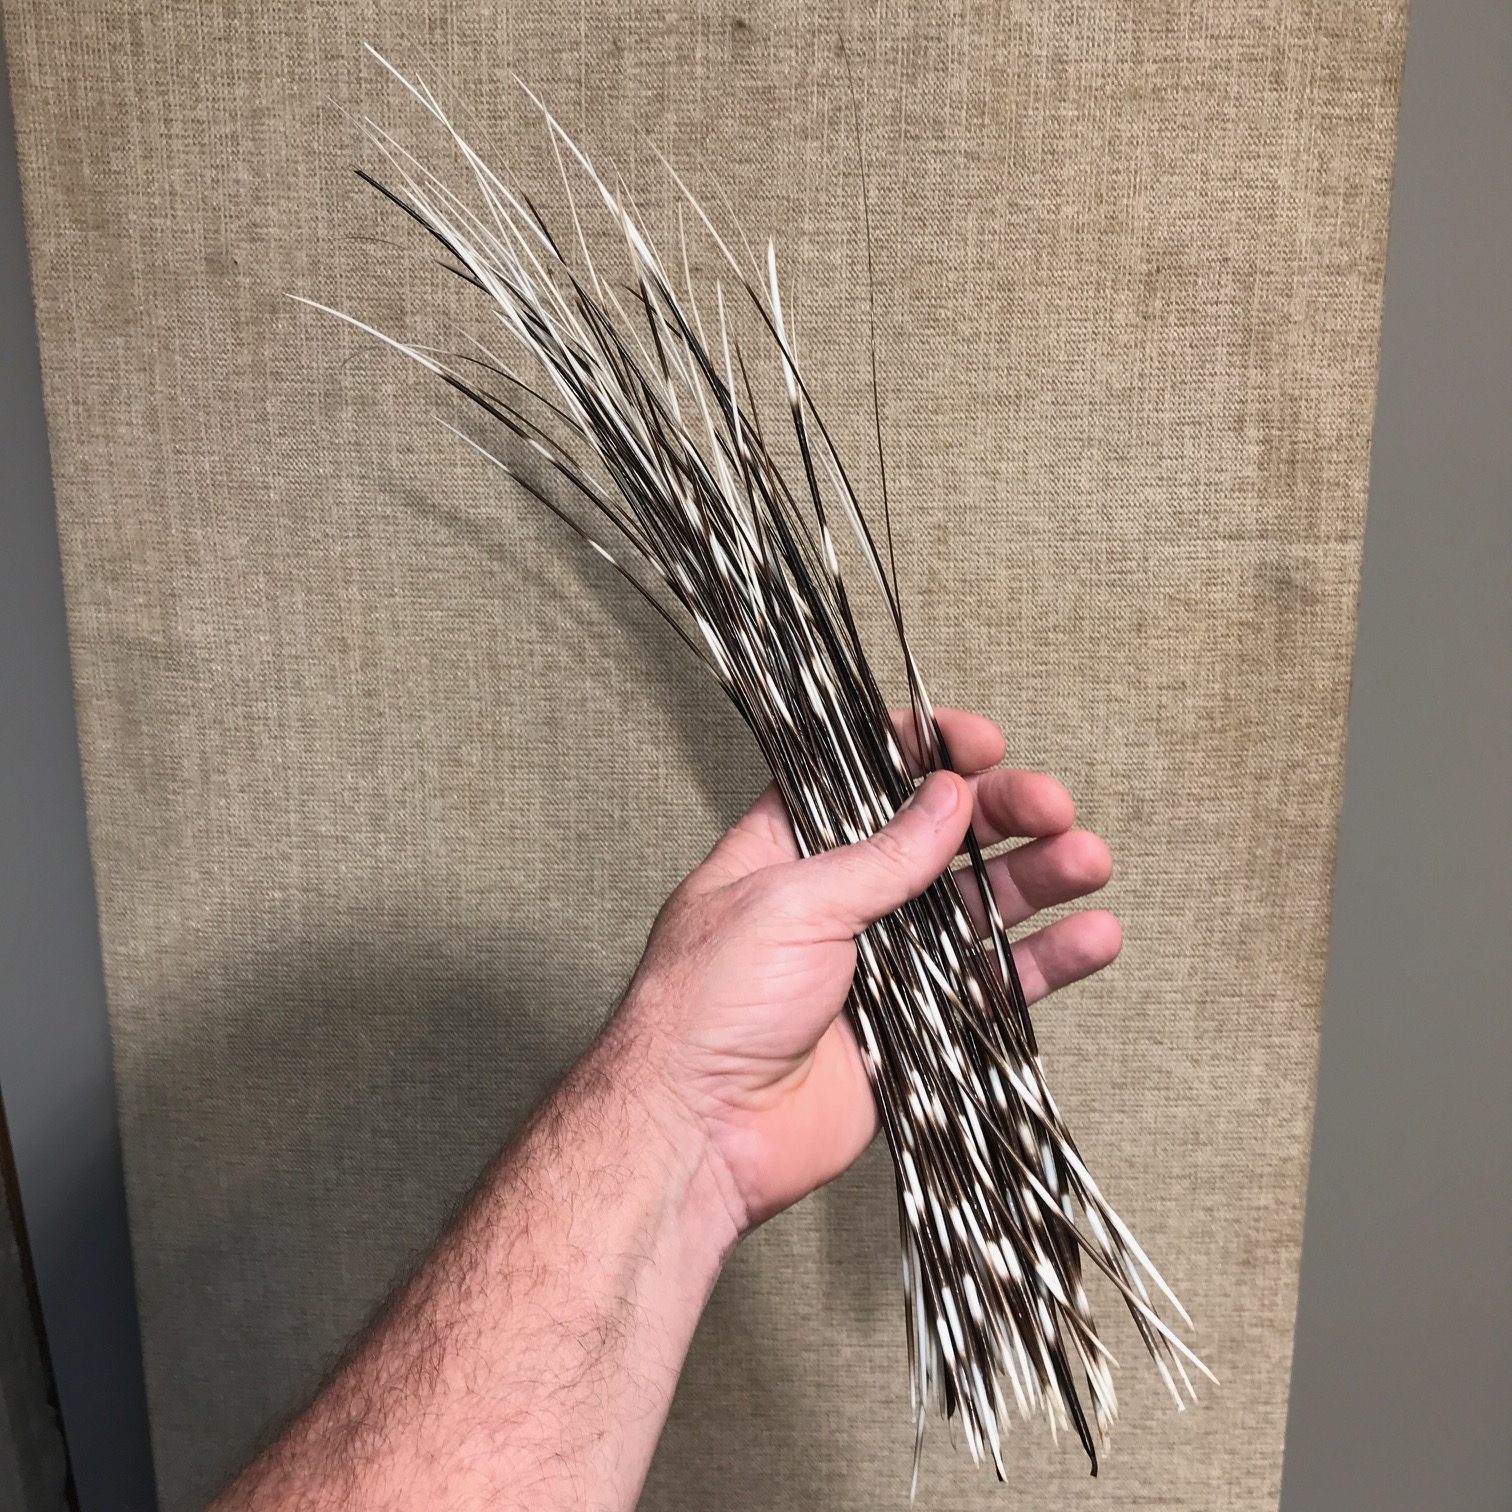 Authentic African Porcupine Quills, Medium 5-7 Long, 5 Pcs